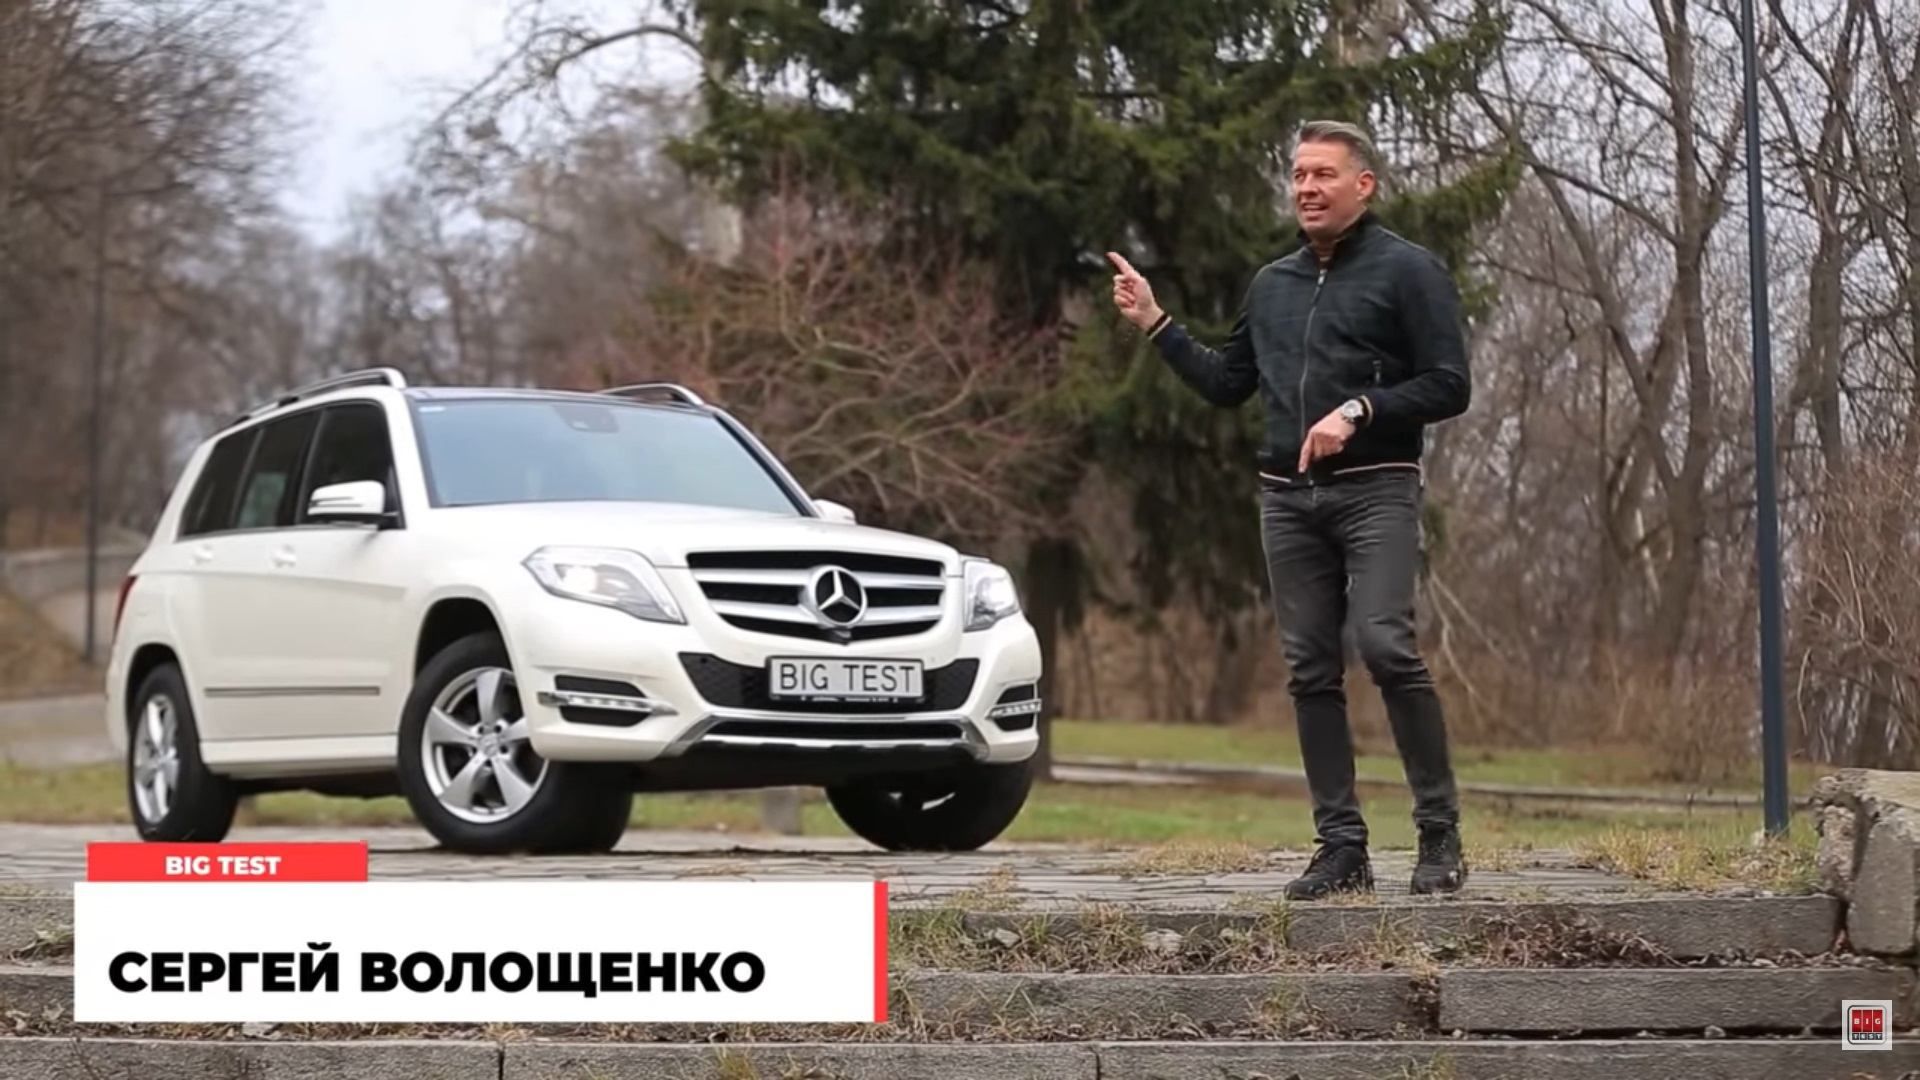 Огляд Mercedes-Benz GLK бу – ціна в Україні, фото, відео